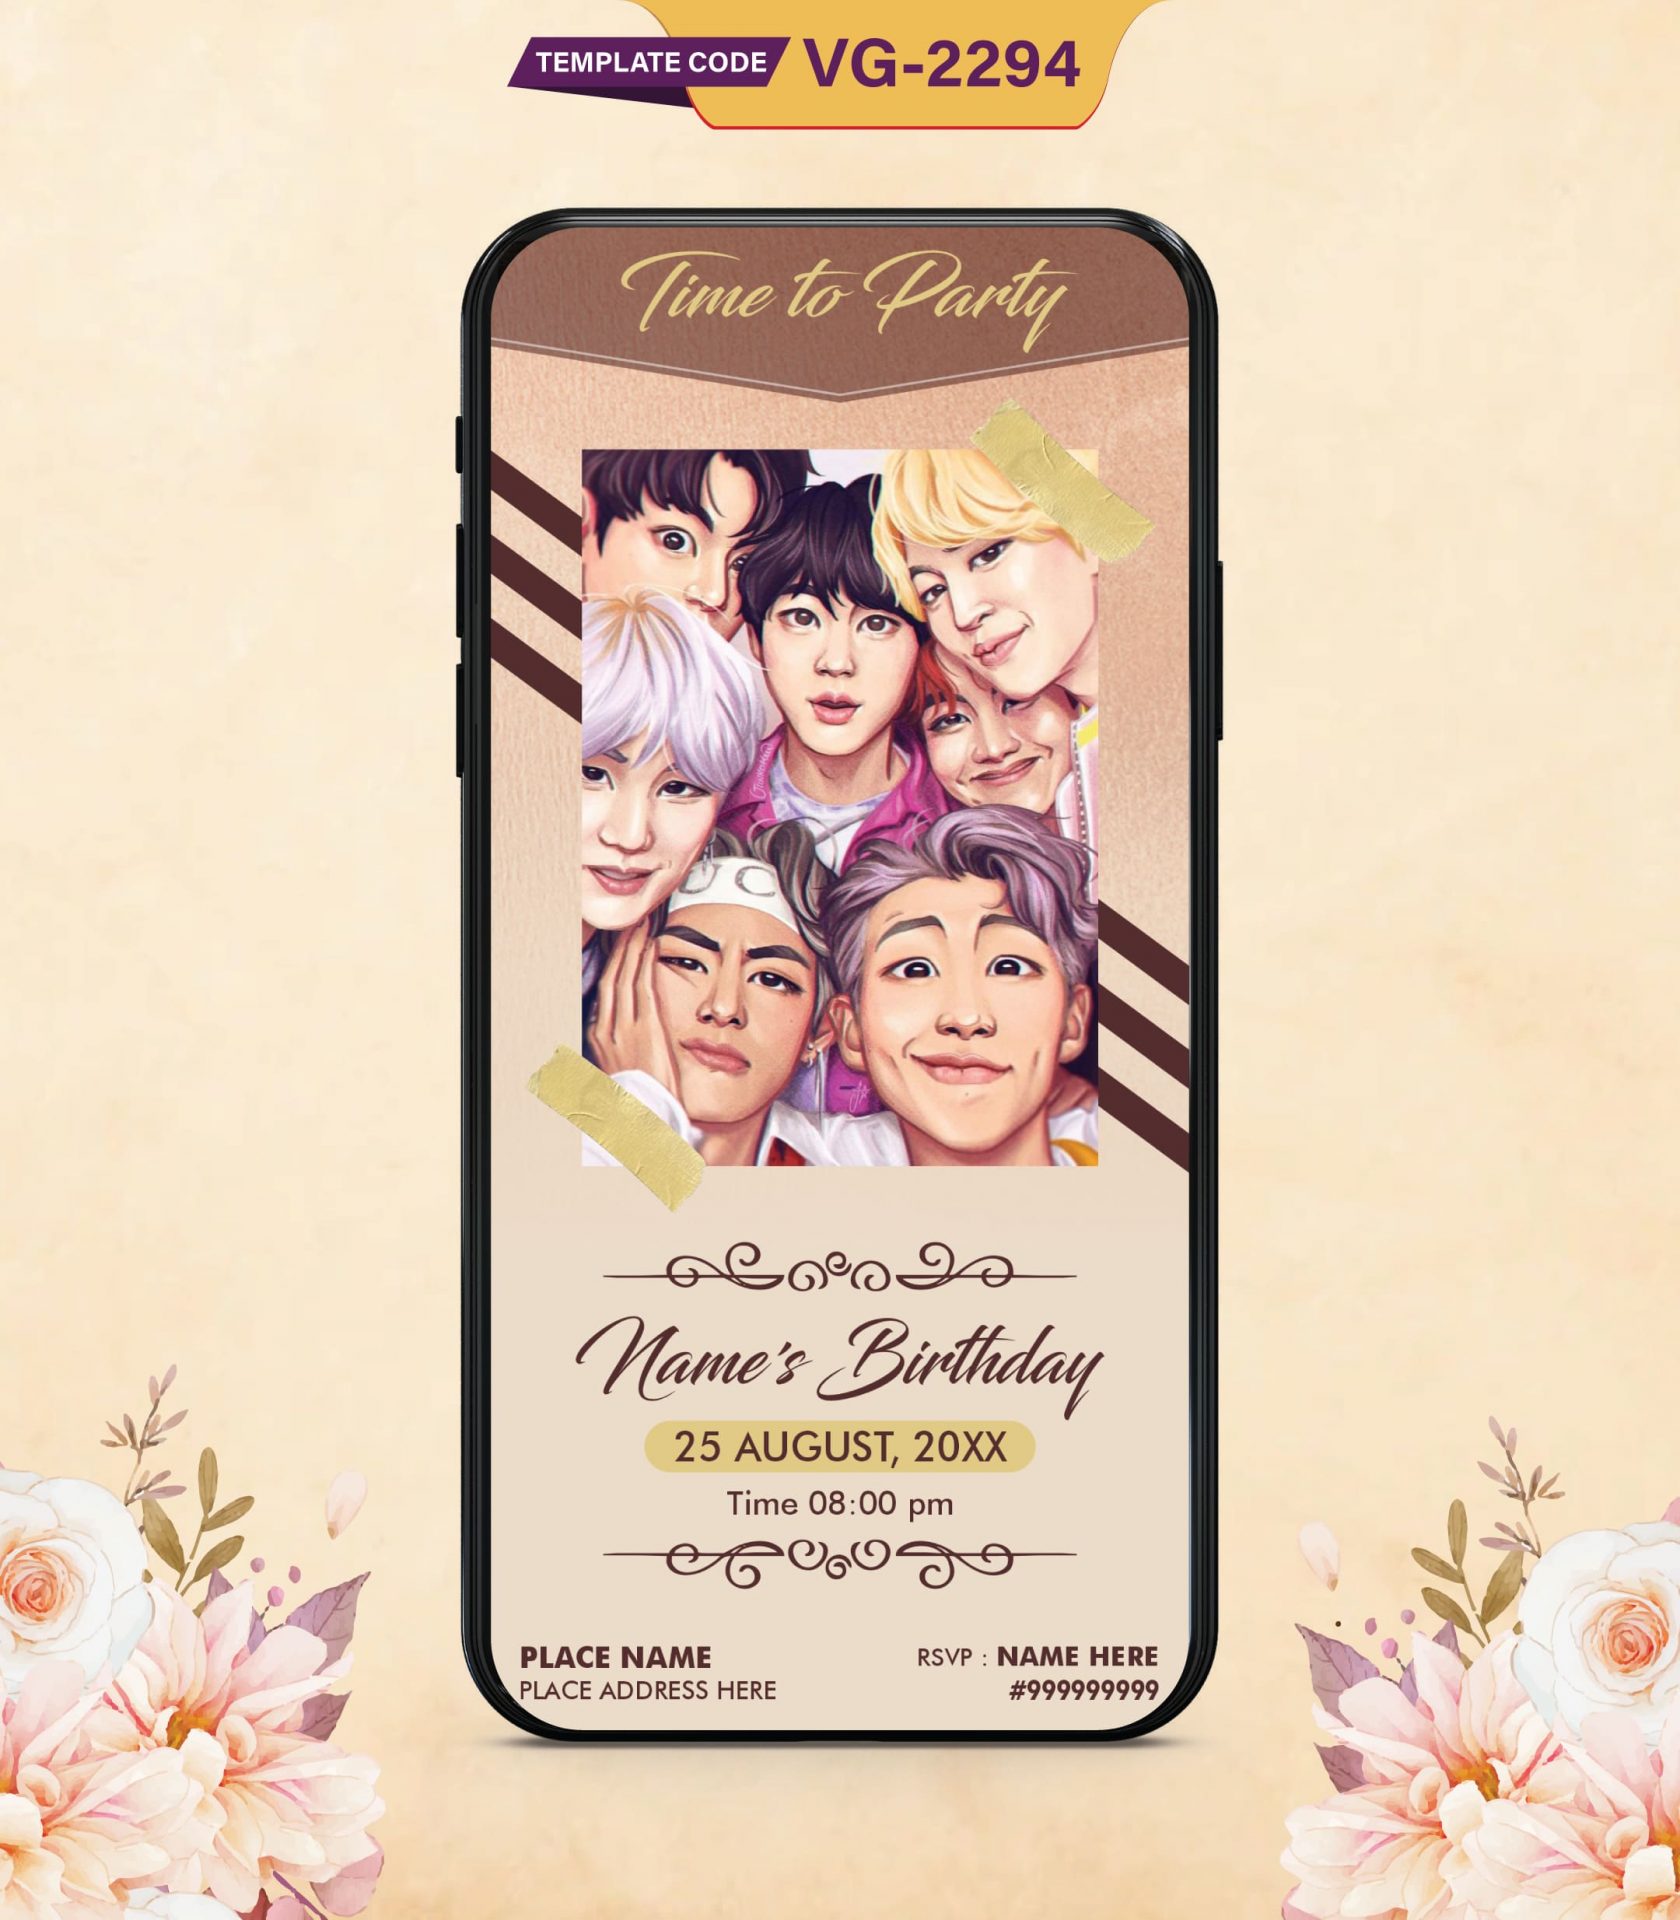 BTS Birthday Party Invitation